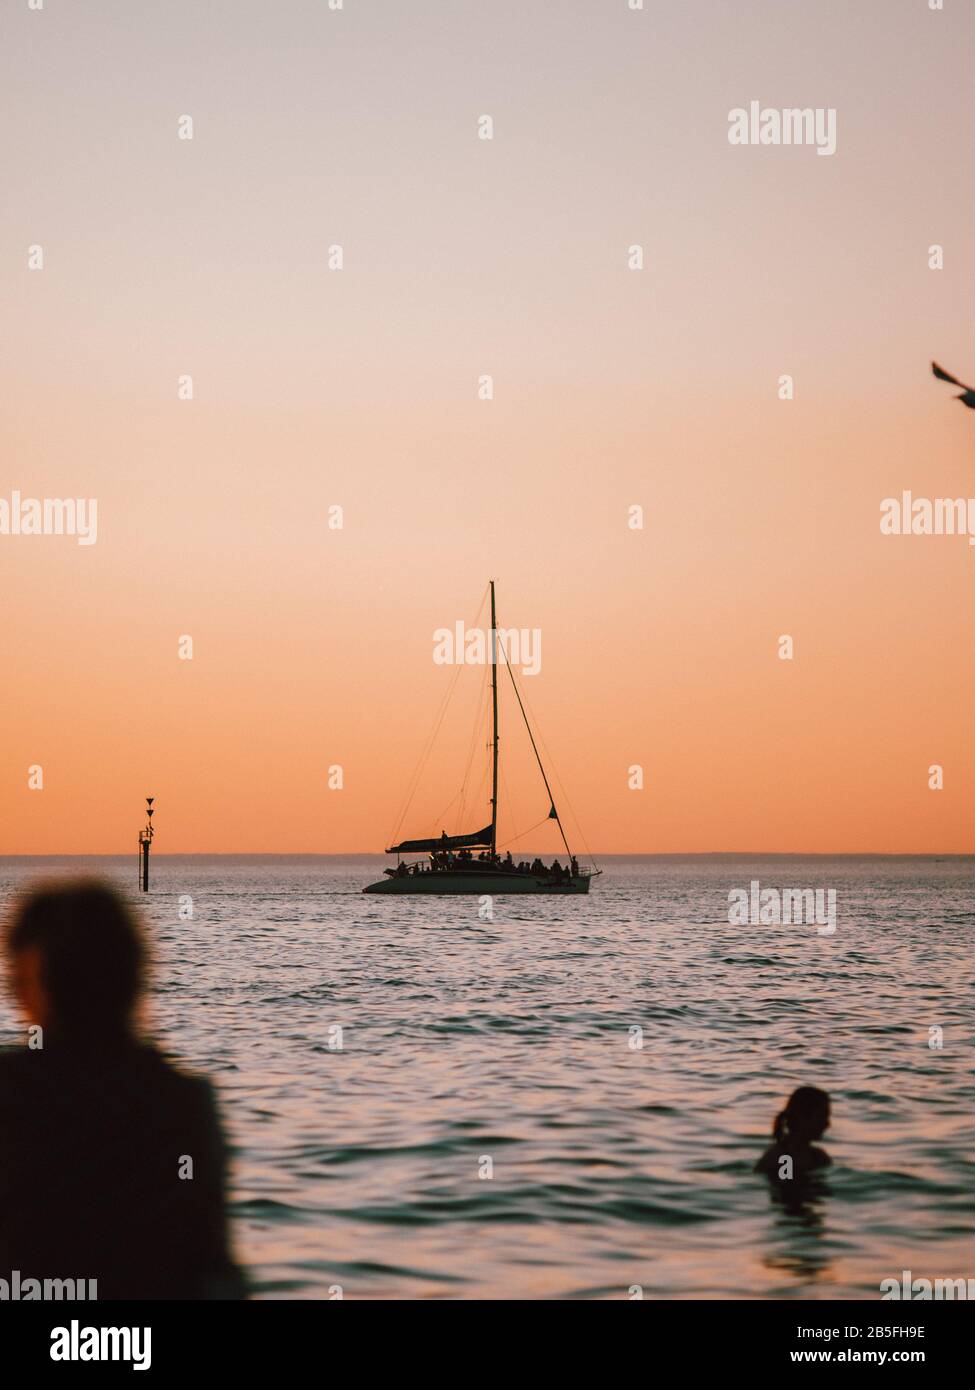 La silhouette di una barca a vela nel mare in Australia al tramonto Foto Stock